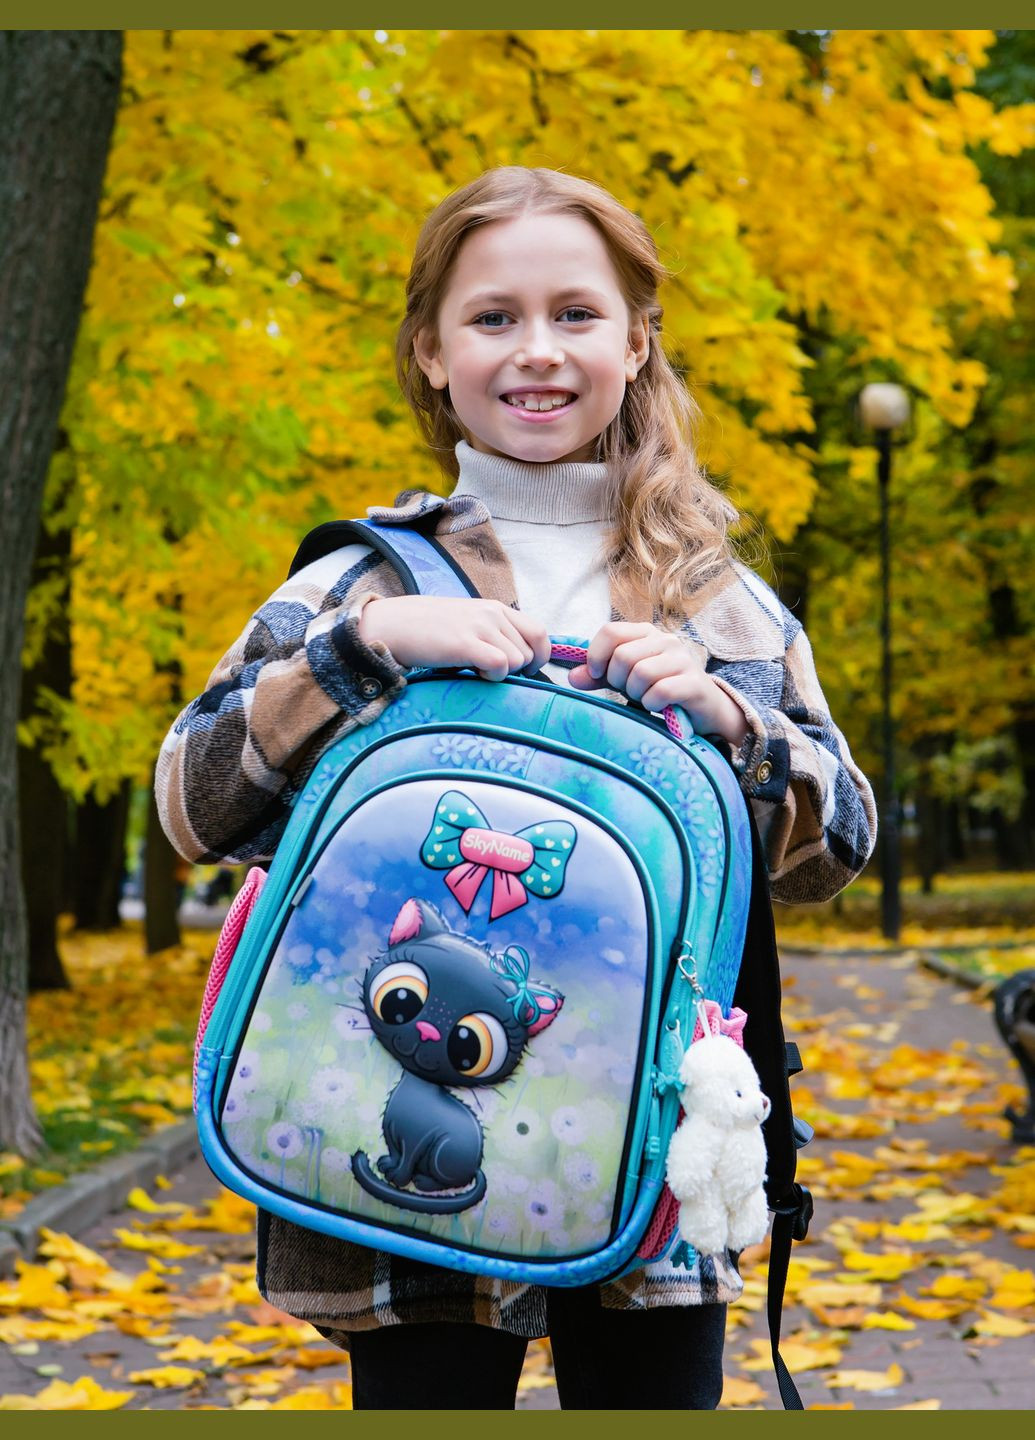 Школьный рюкзак (ранец) бирюзовый для девочки /SkyName с Котиком 36х30х16 см для начальной школы (5023) Winner (293815066)